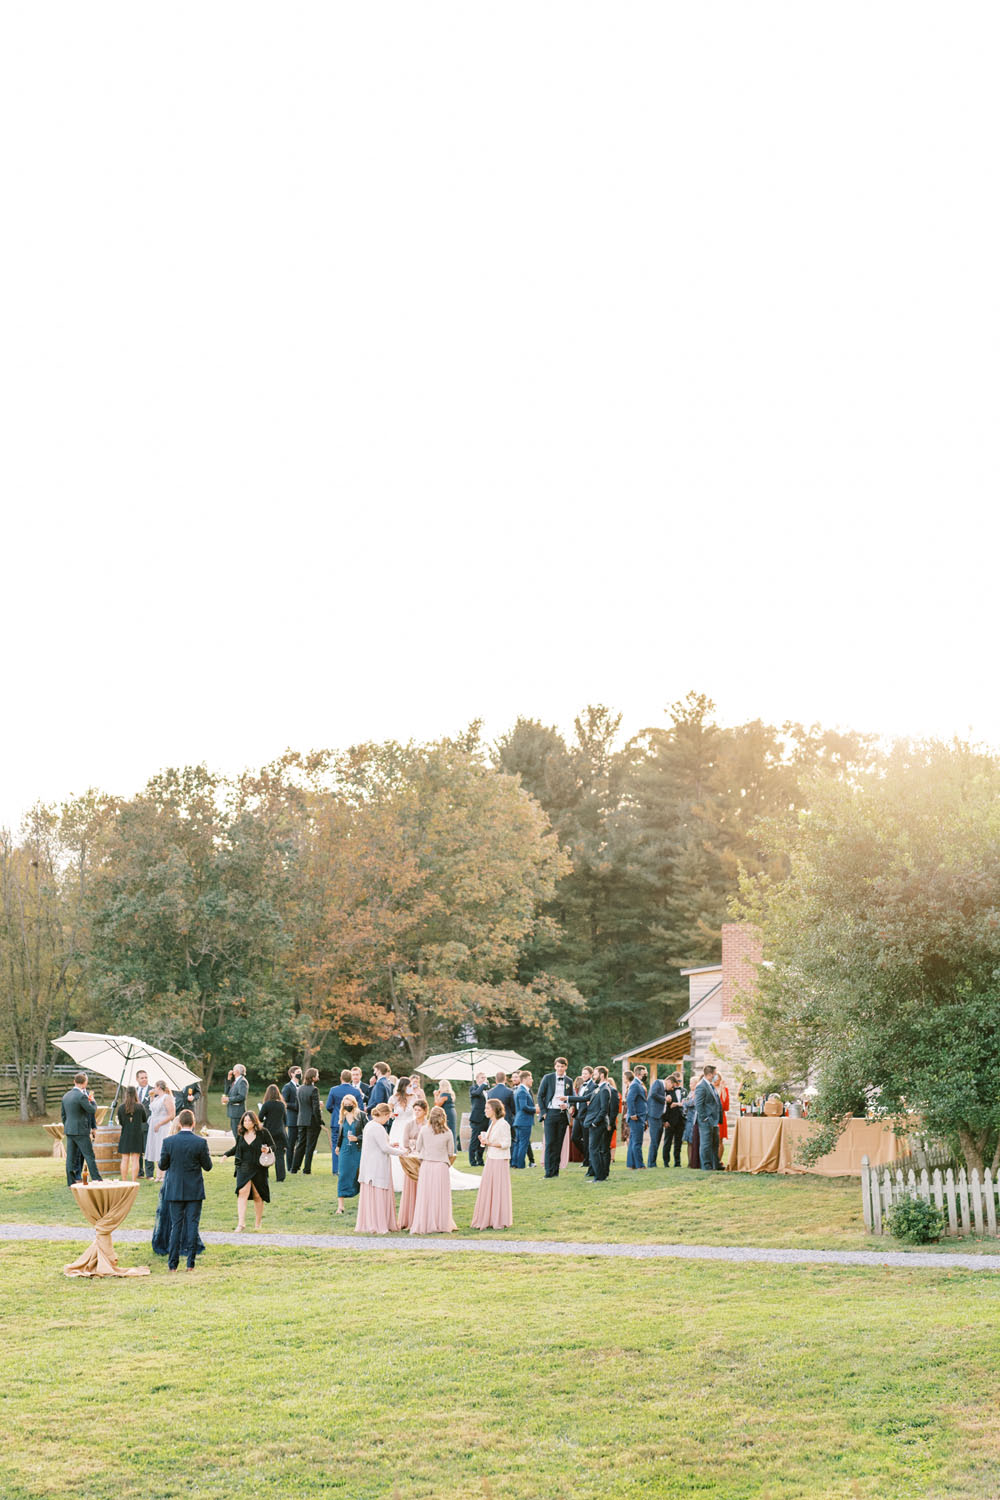 Romantic Sylvanside Farm wedding in Purcellville, VA